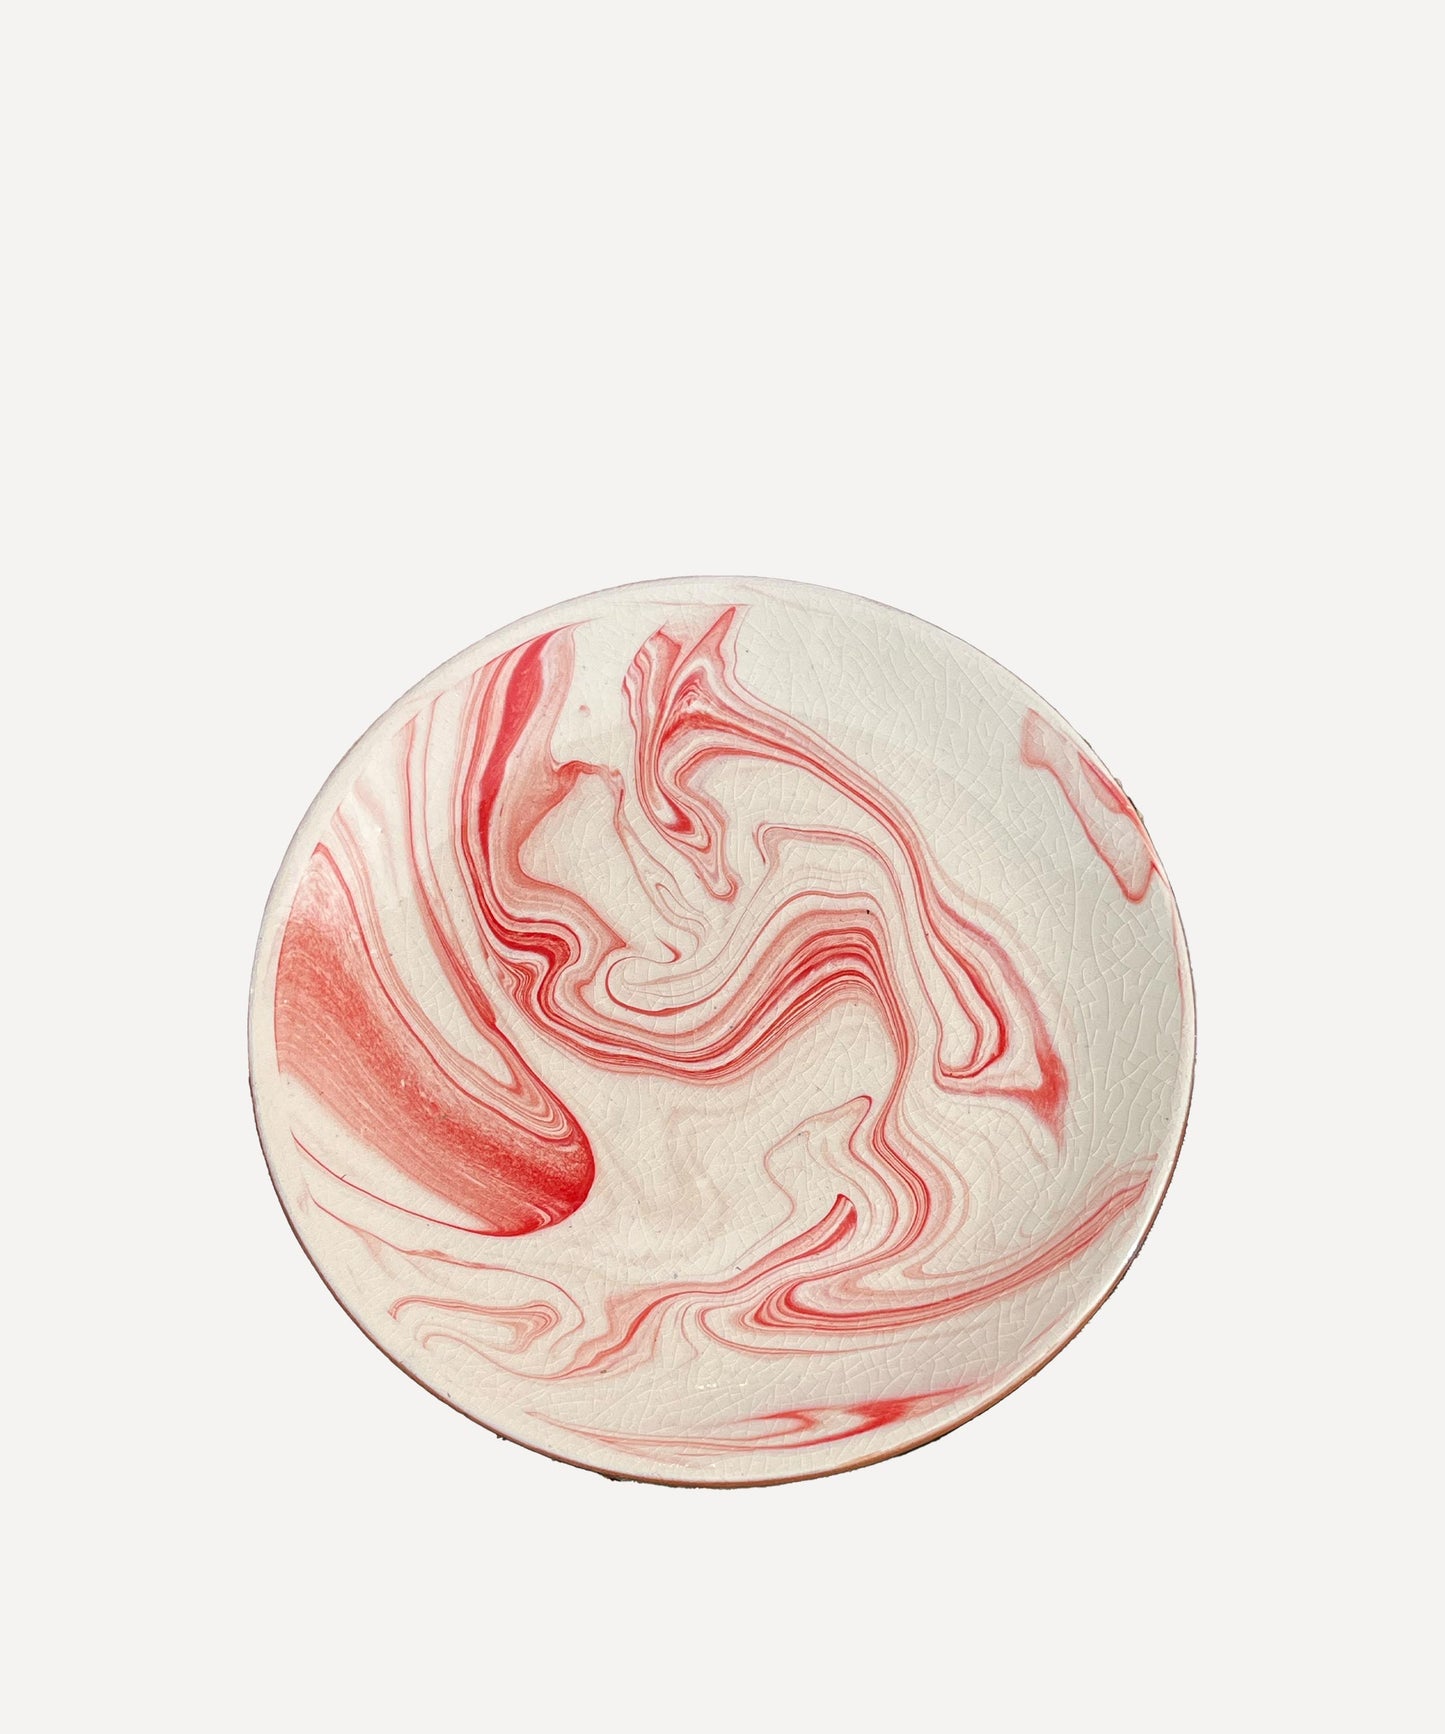 Ribbon Swirl Plate, Large